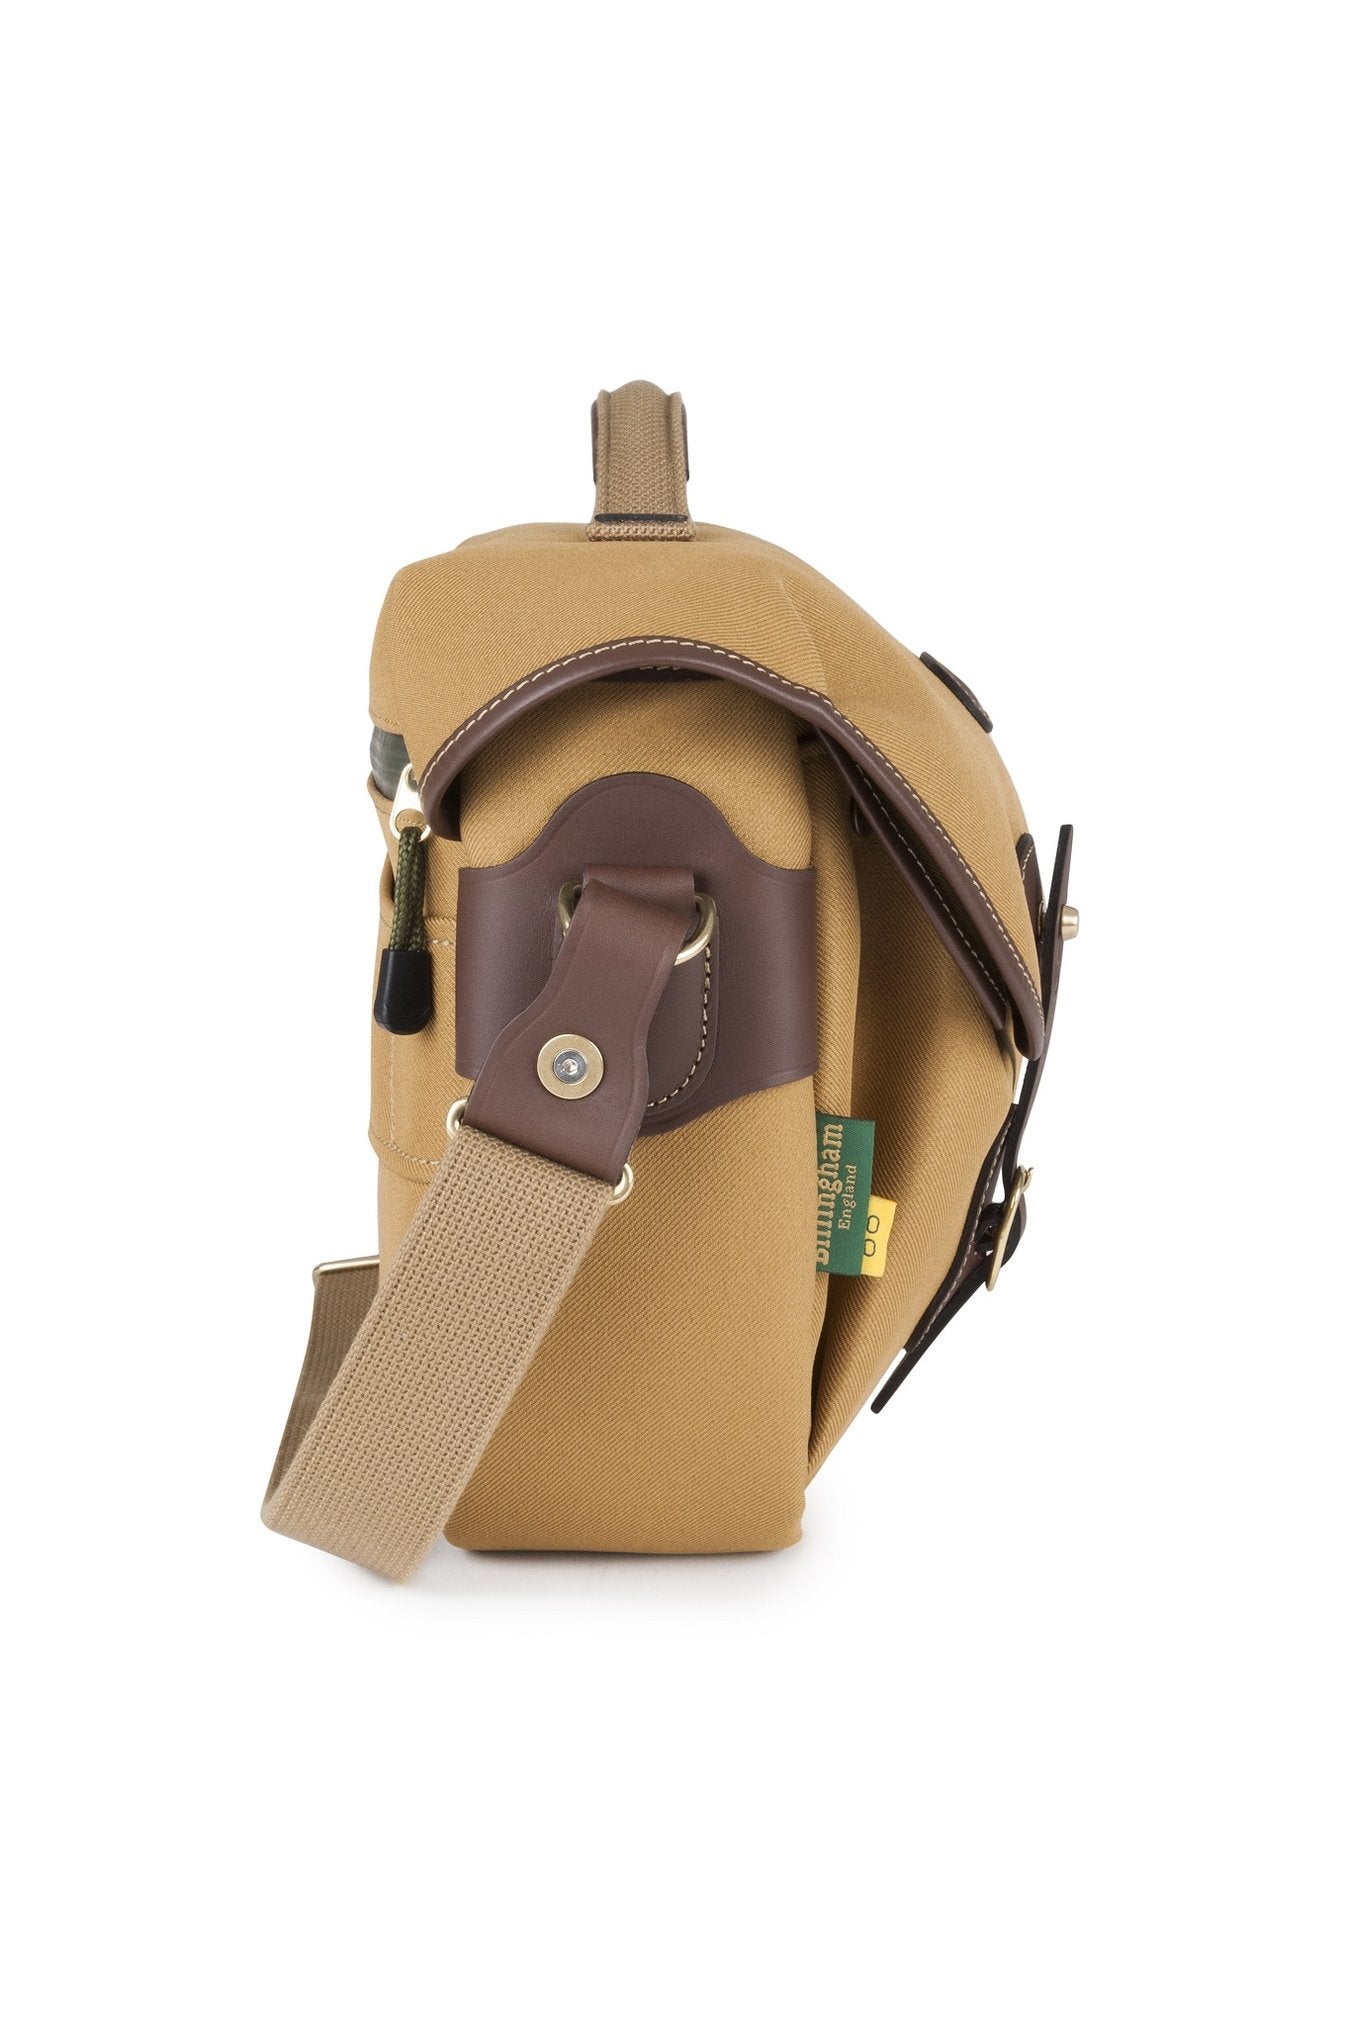 Billingham Luggage, Travel & Camera Bag - Hadley Pro 2020 - Khaki FibreNyte / Chocolate Leather